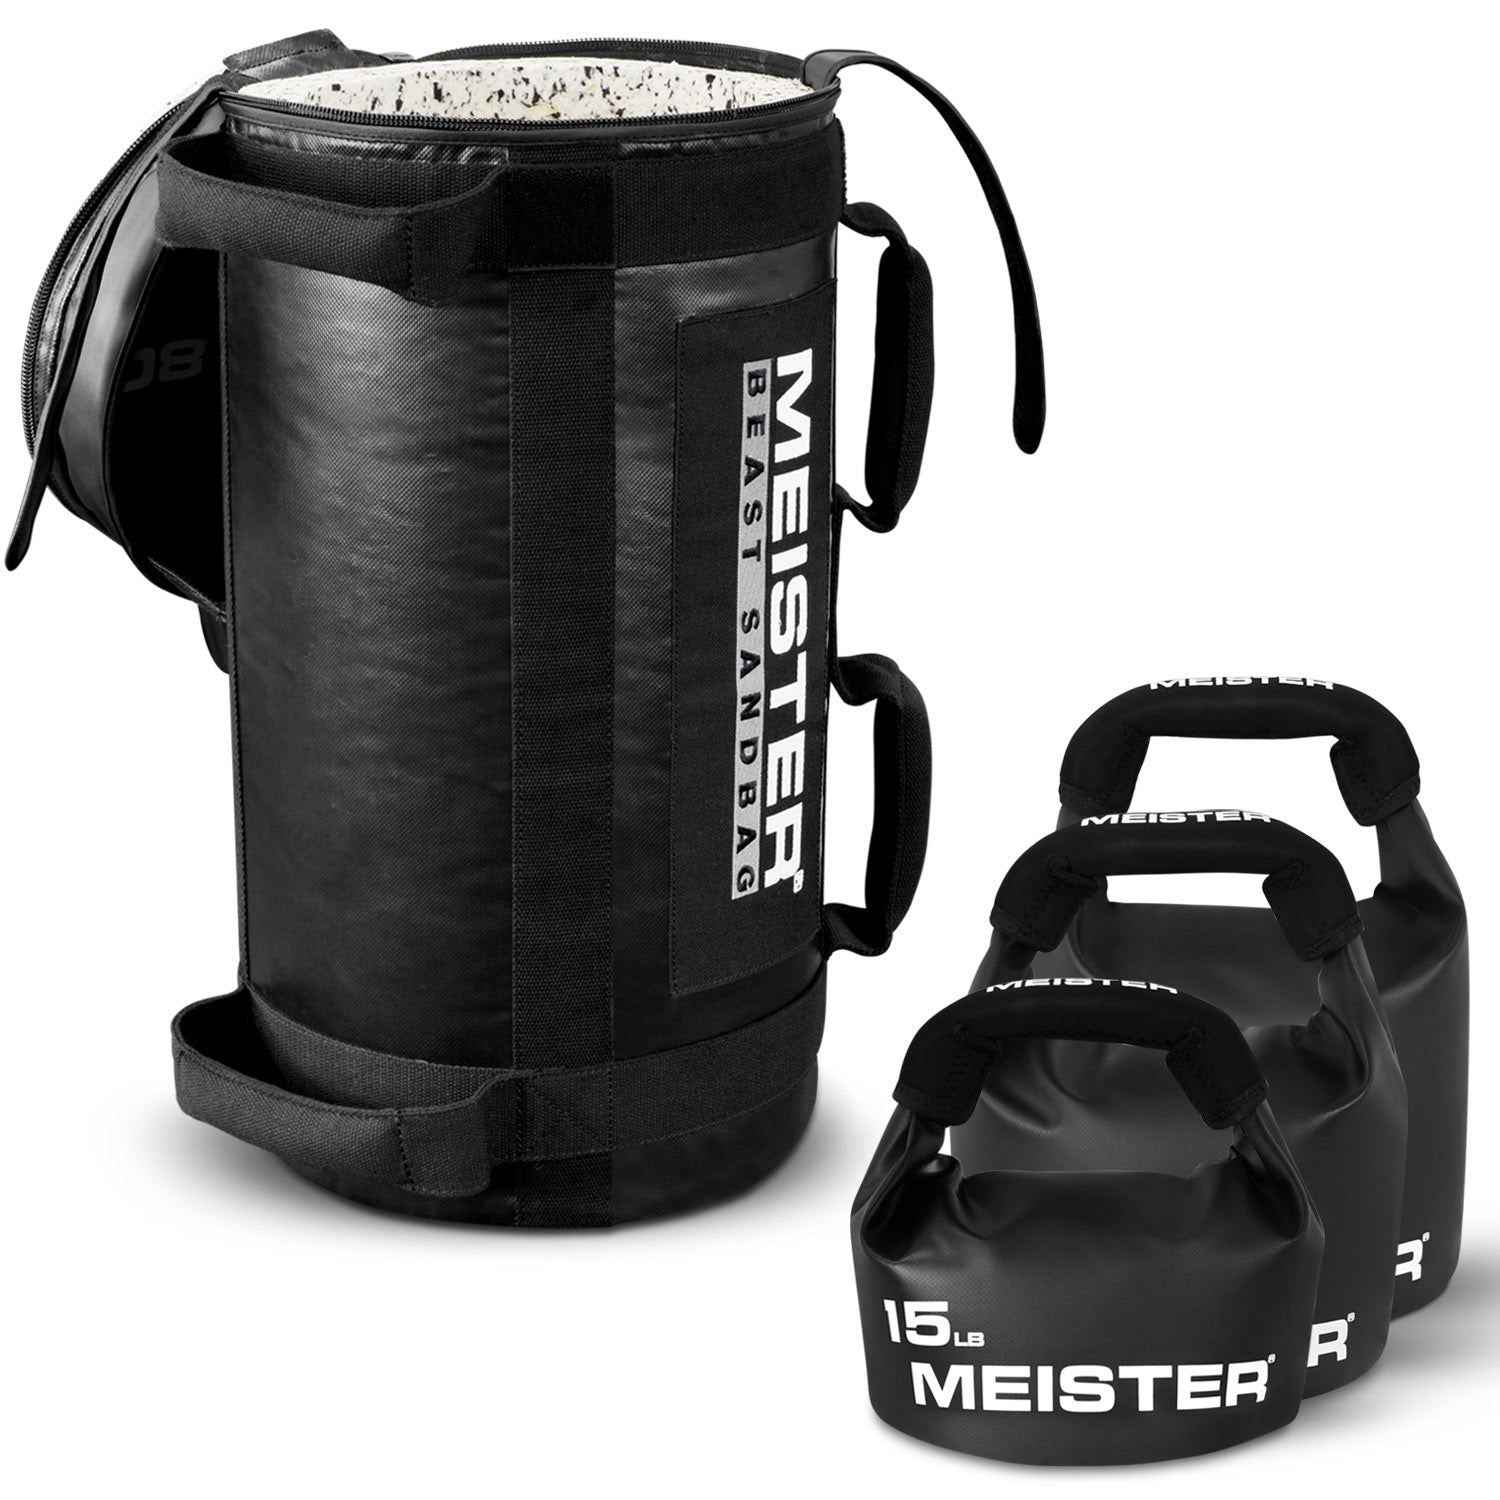 Meister 80lb BEAST Fitness Sandbag w/ Removable Kettlebells